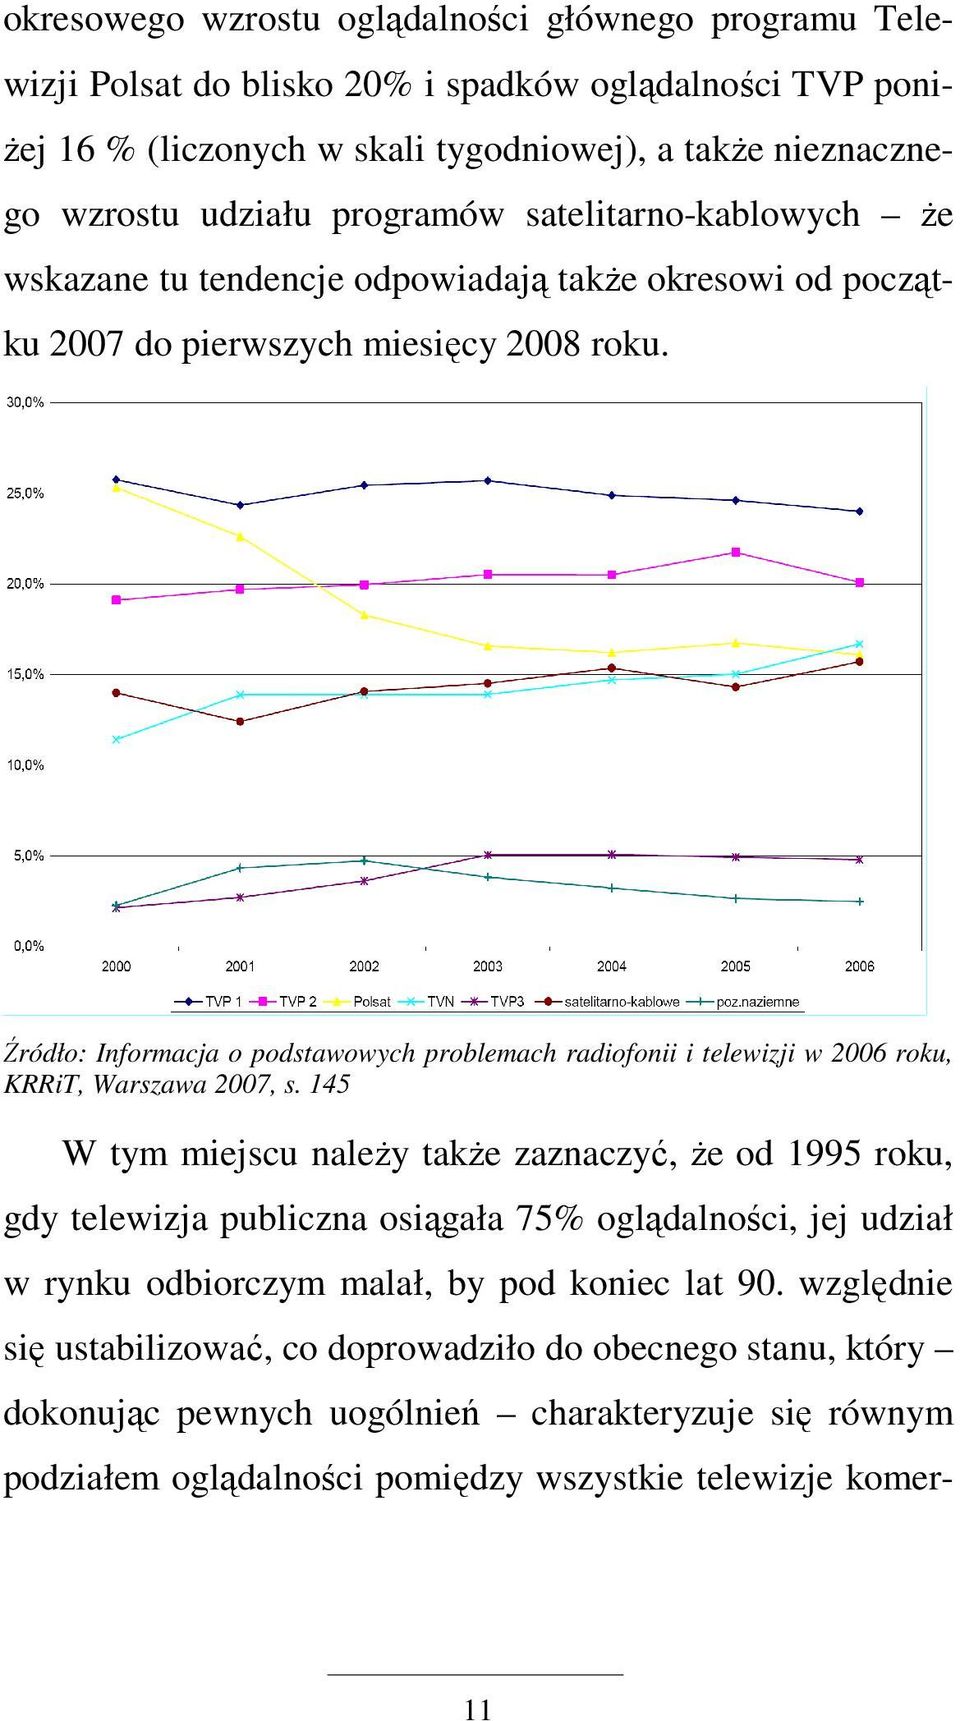 Źródło: Informacja o podstawowych problemach radiofonii i telewizji w 2006 roku, KRRiT, Warszawa 2007, s.